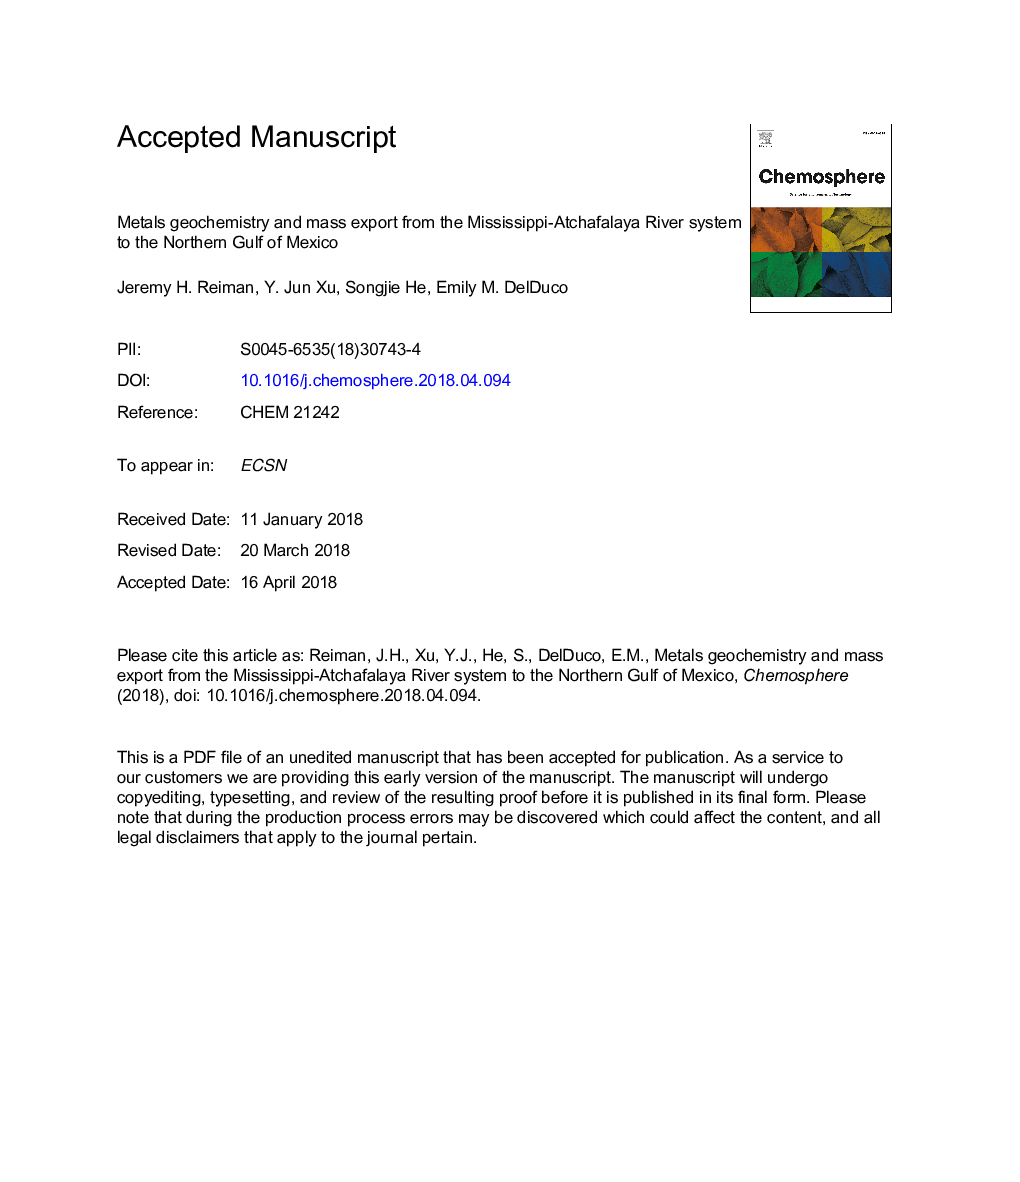 ژئوشیمی فلزات و صادرات توده از سیستم رودخانه می سی پی - آچافالایا به خلیج شمال مکزیک 